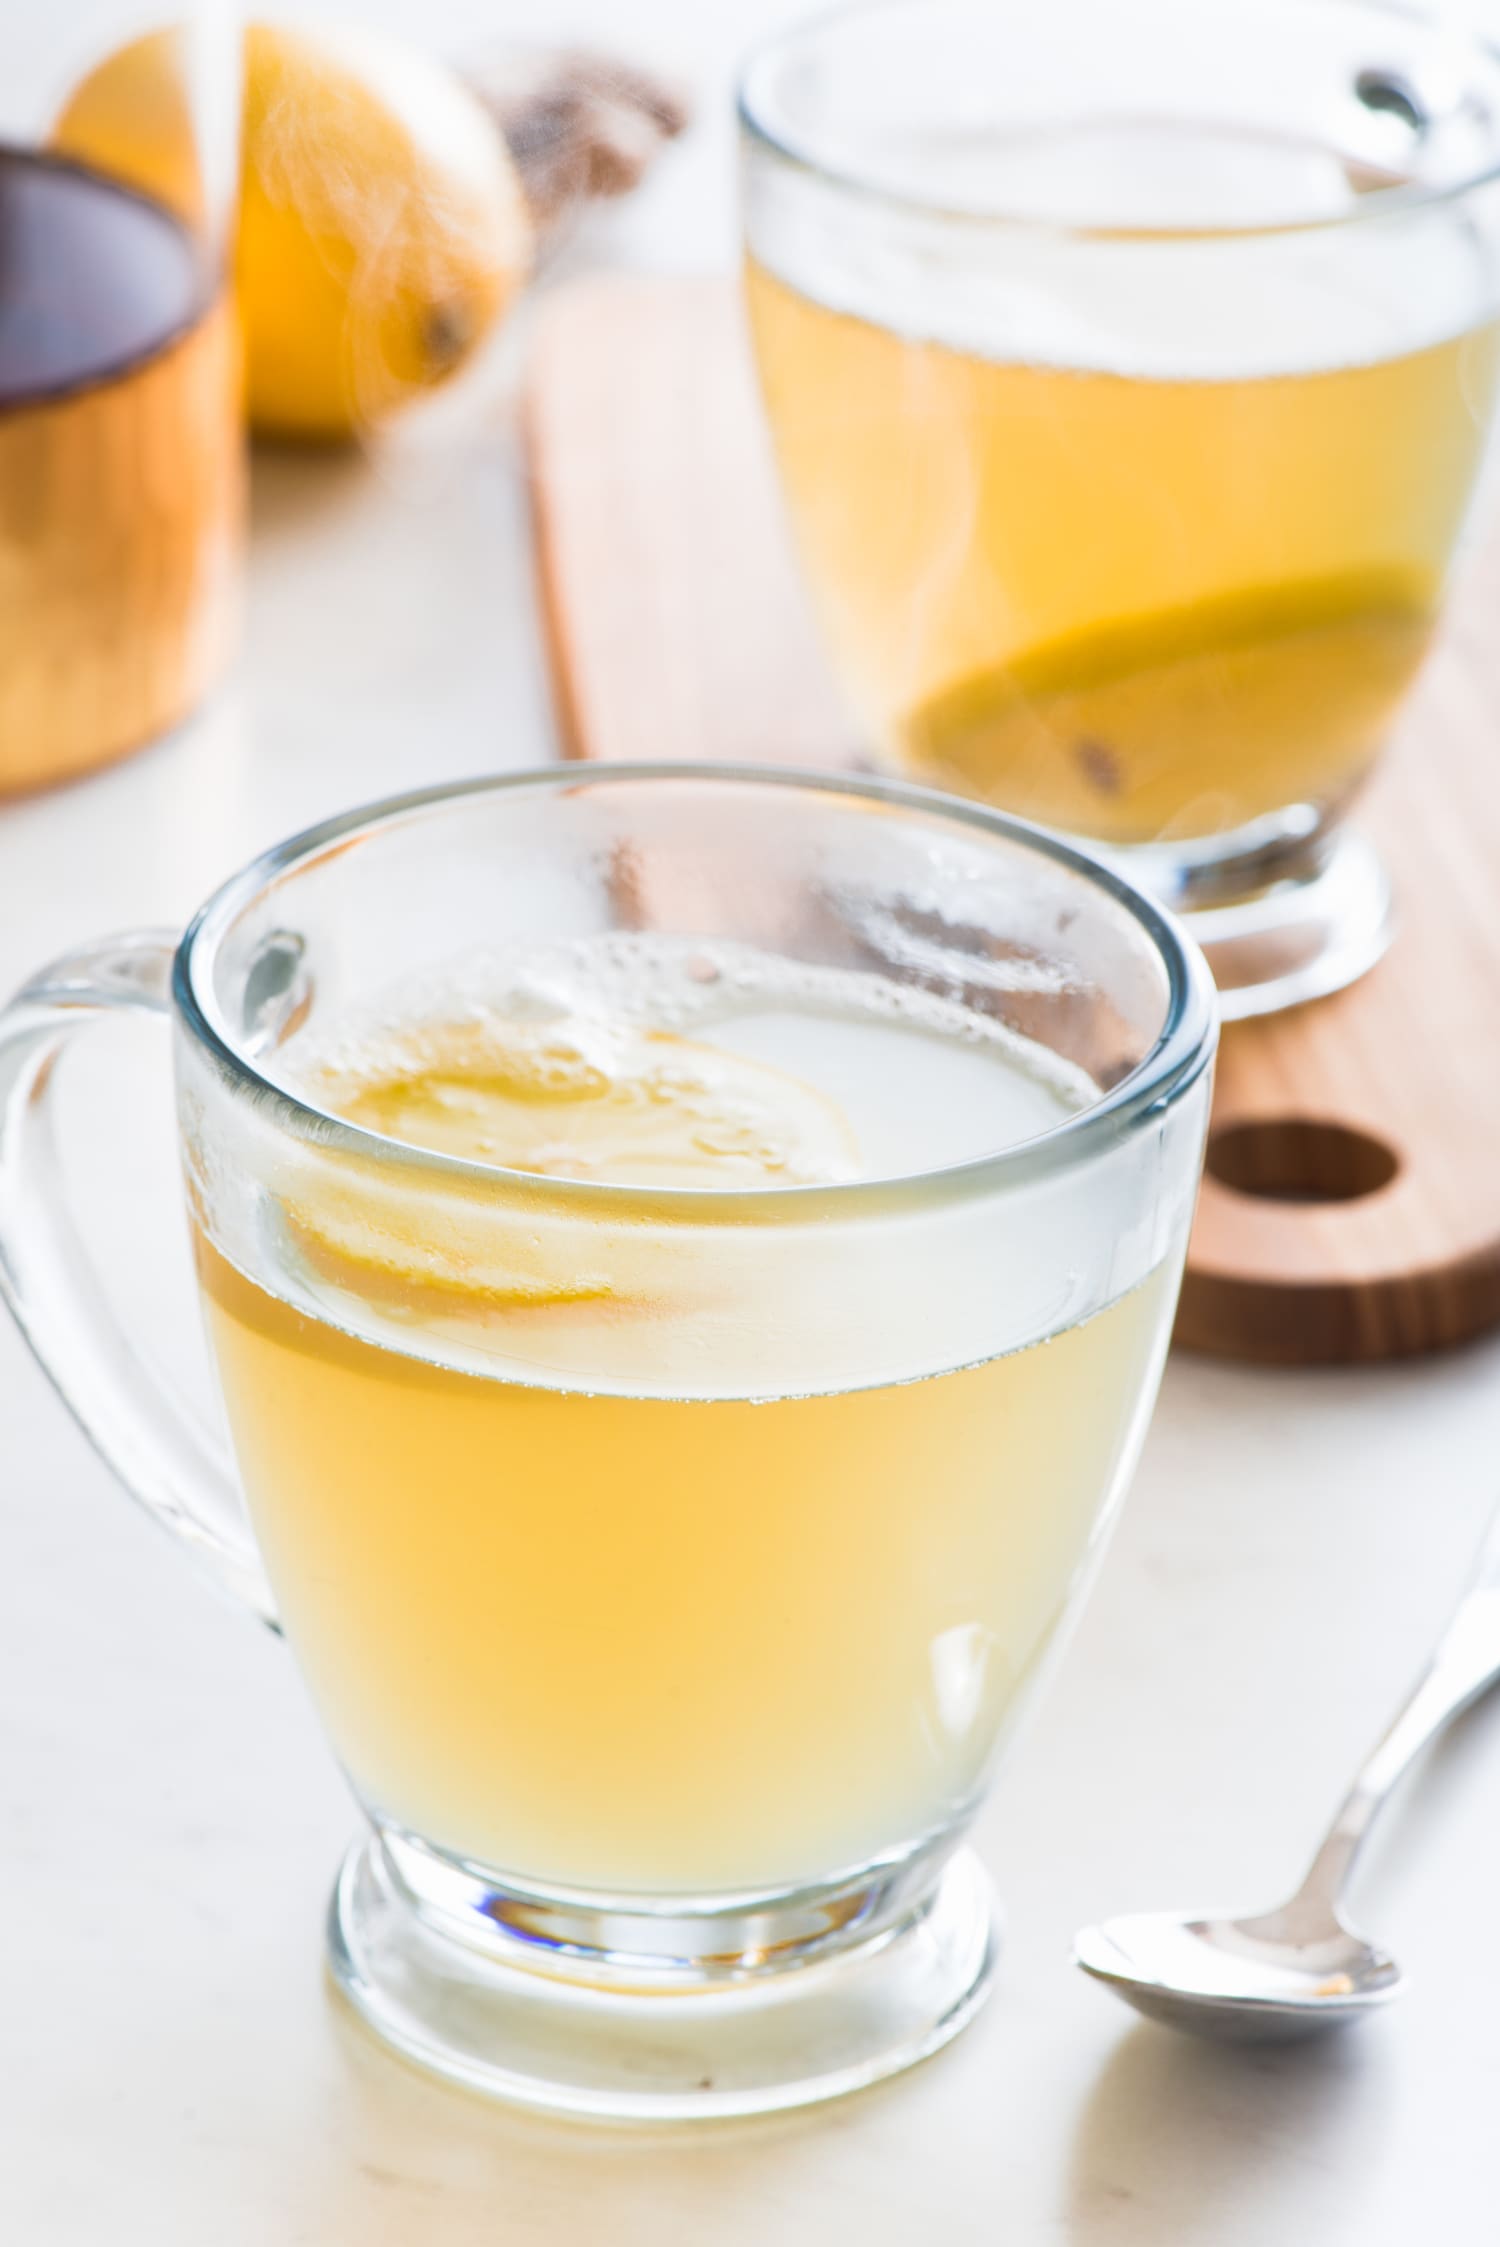 Flu Season Ginger Honey Lemon Tonic Drink Remedy | Kitchn